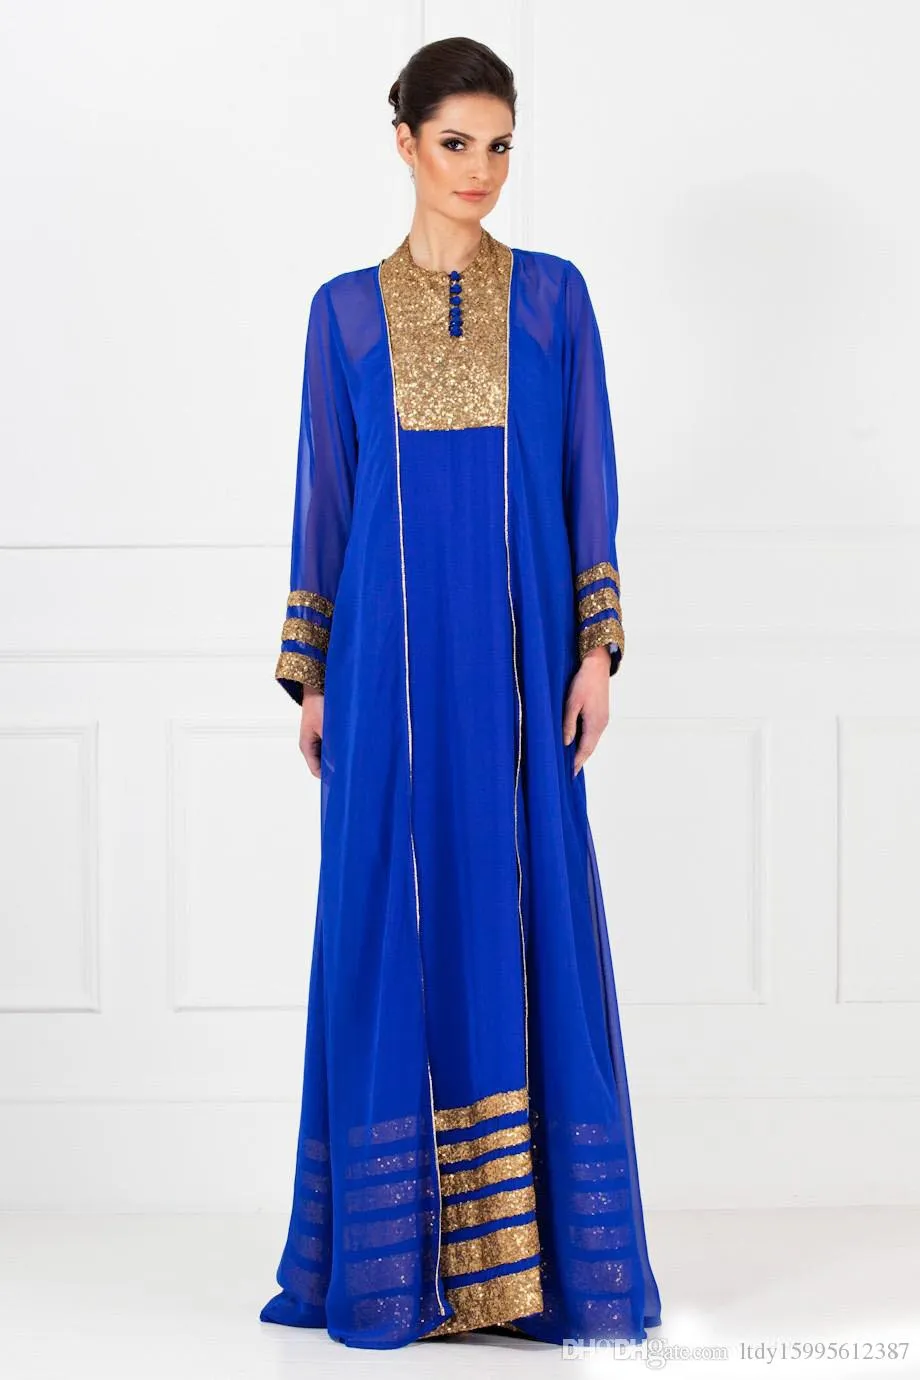 Langarm-elegantes Kleid 2019 neues Vintage-Königsblau Dubai Arabisch-Kaftan-muslimisches formelles Abendkleid im arabischen Stil 212